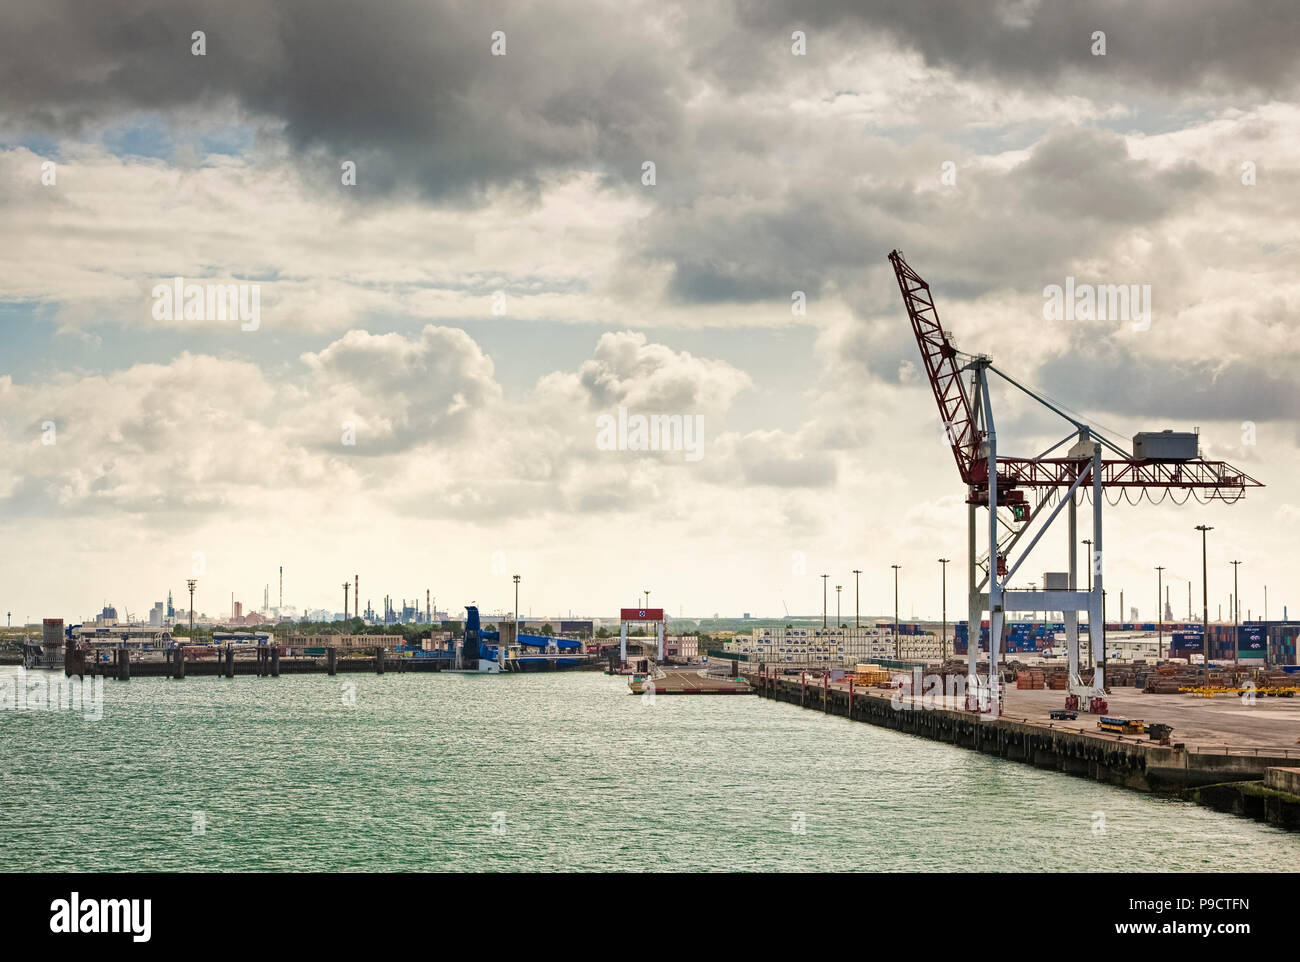 El puerto de ferry terminal y muelles industriales de Dunkerque, Francia, Europa Foto de stock